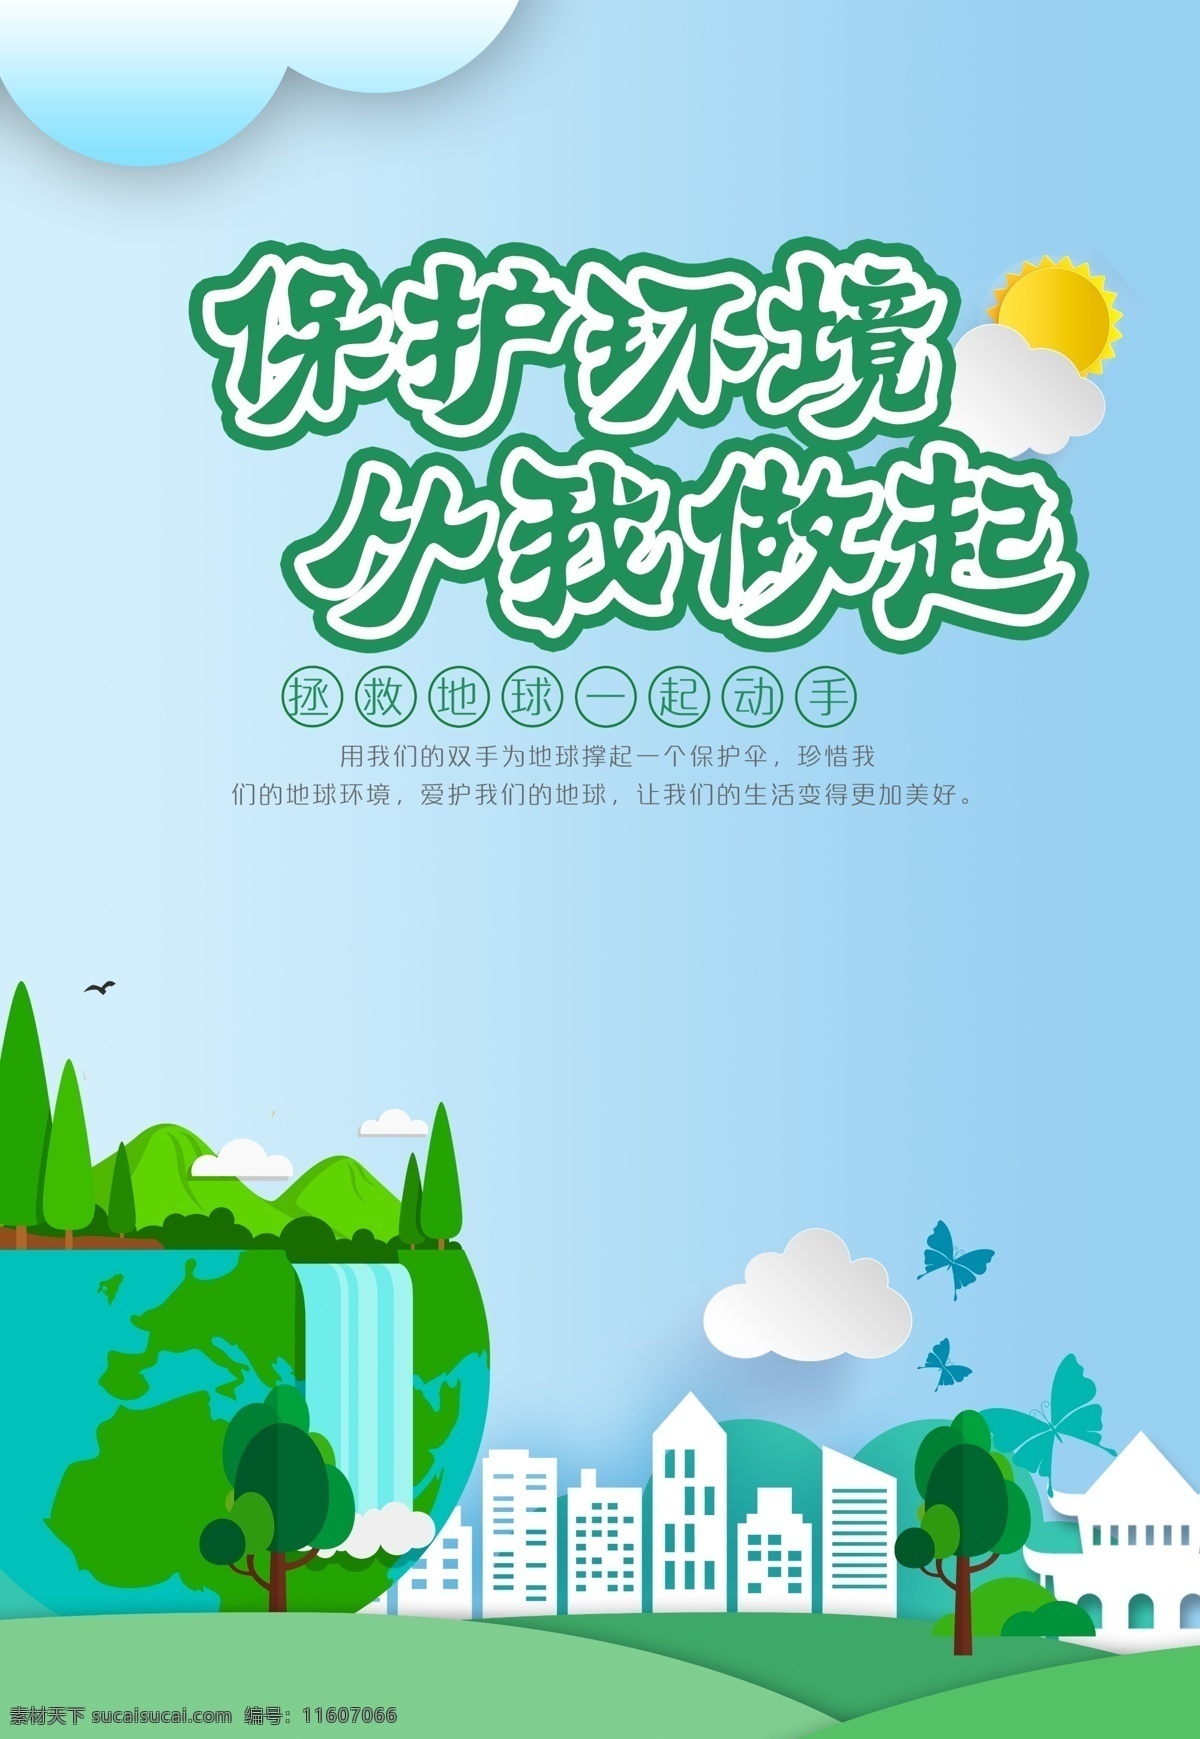 双创海报 叶鑫 爱护环境 保护环境 绿色 绿色出行 双创 创卫 创文